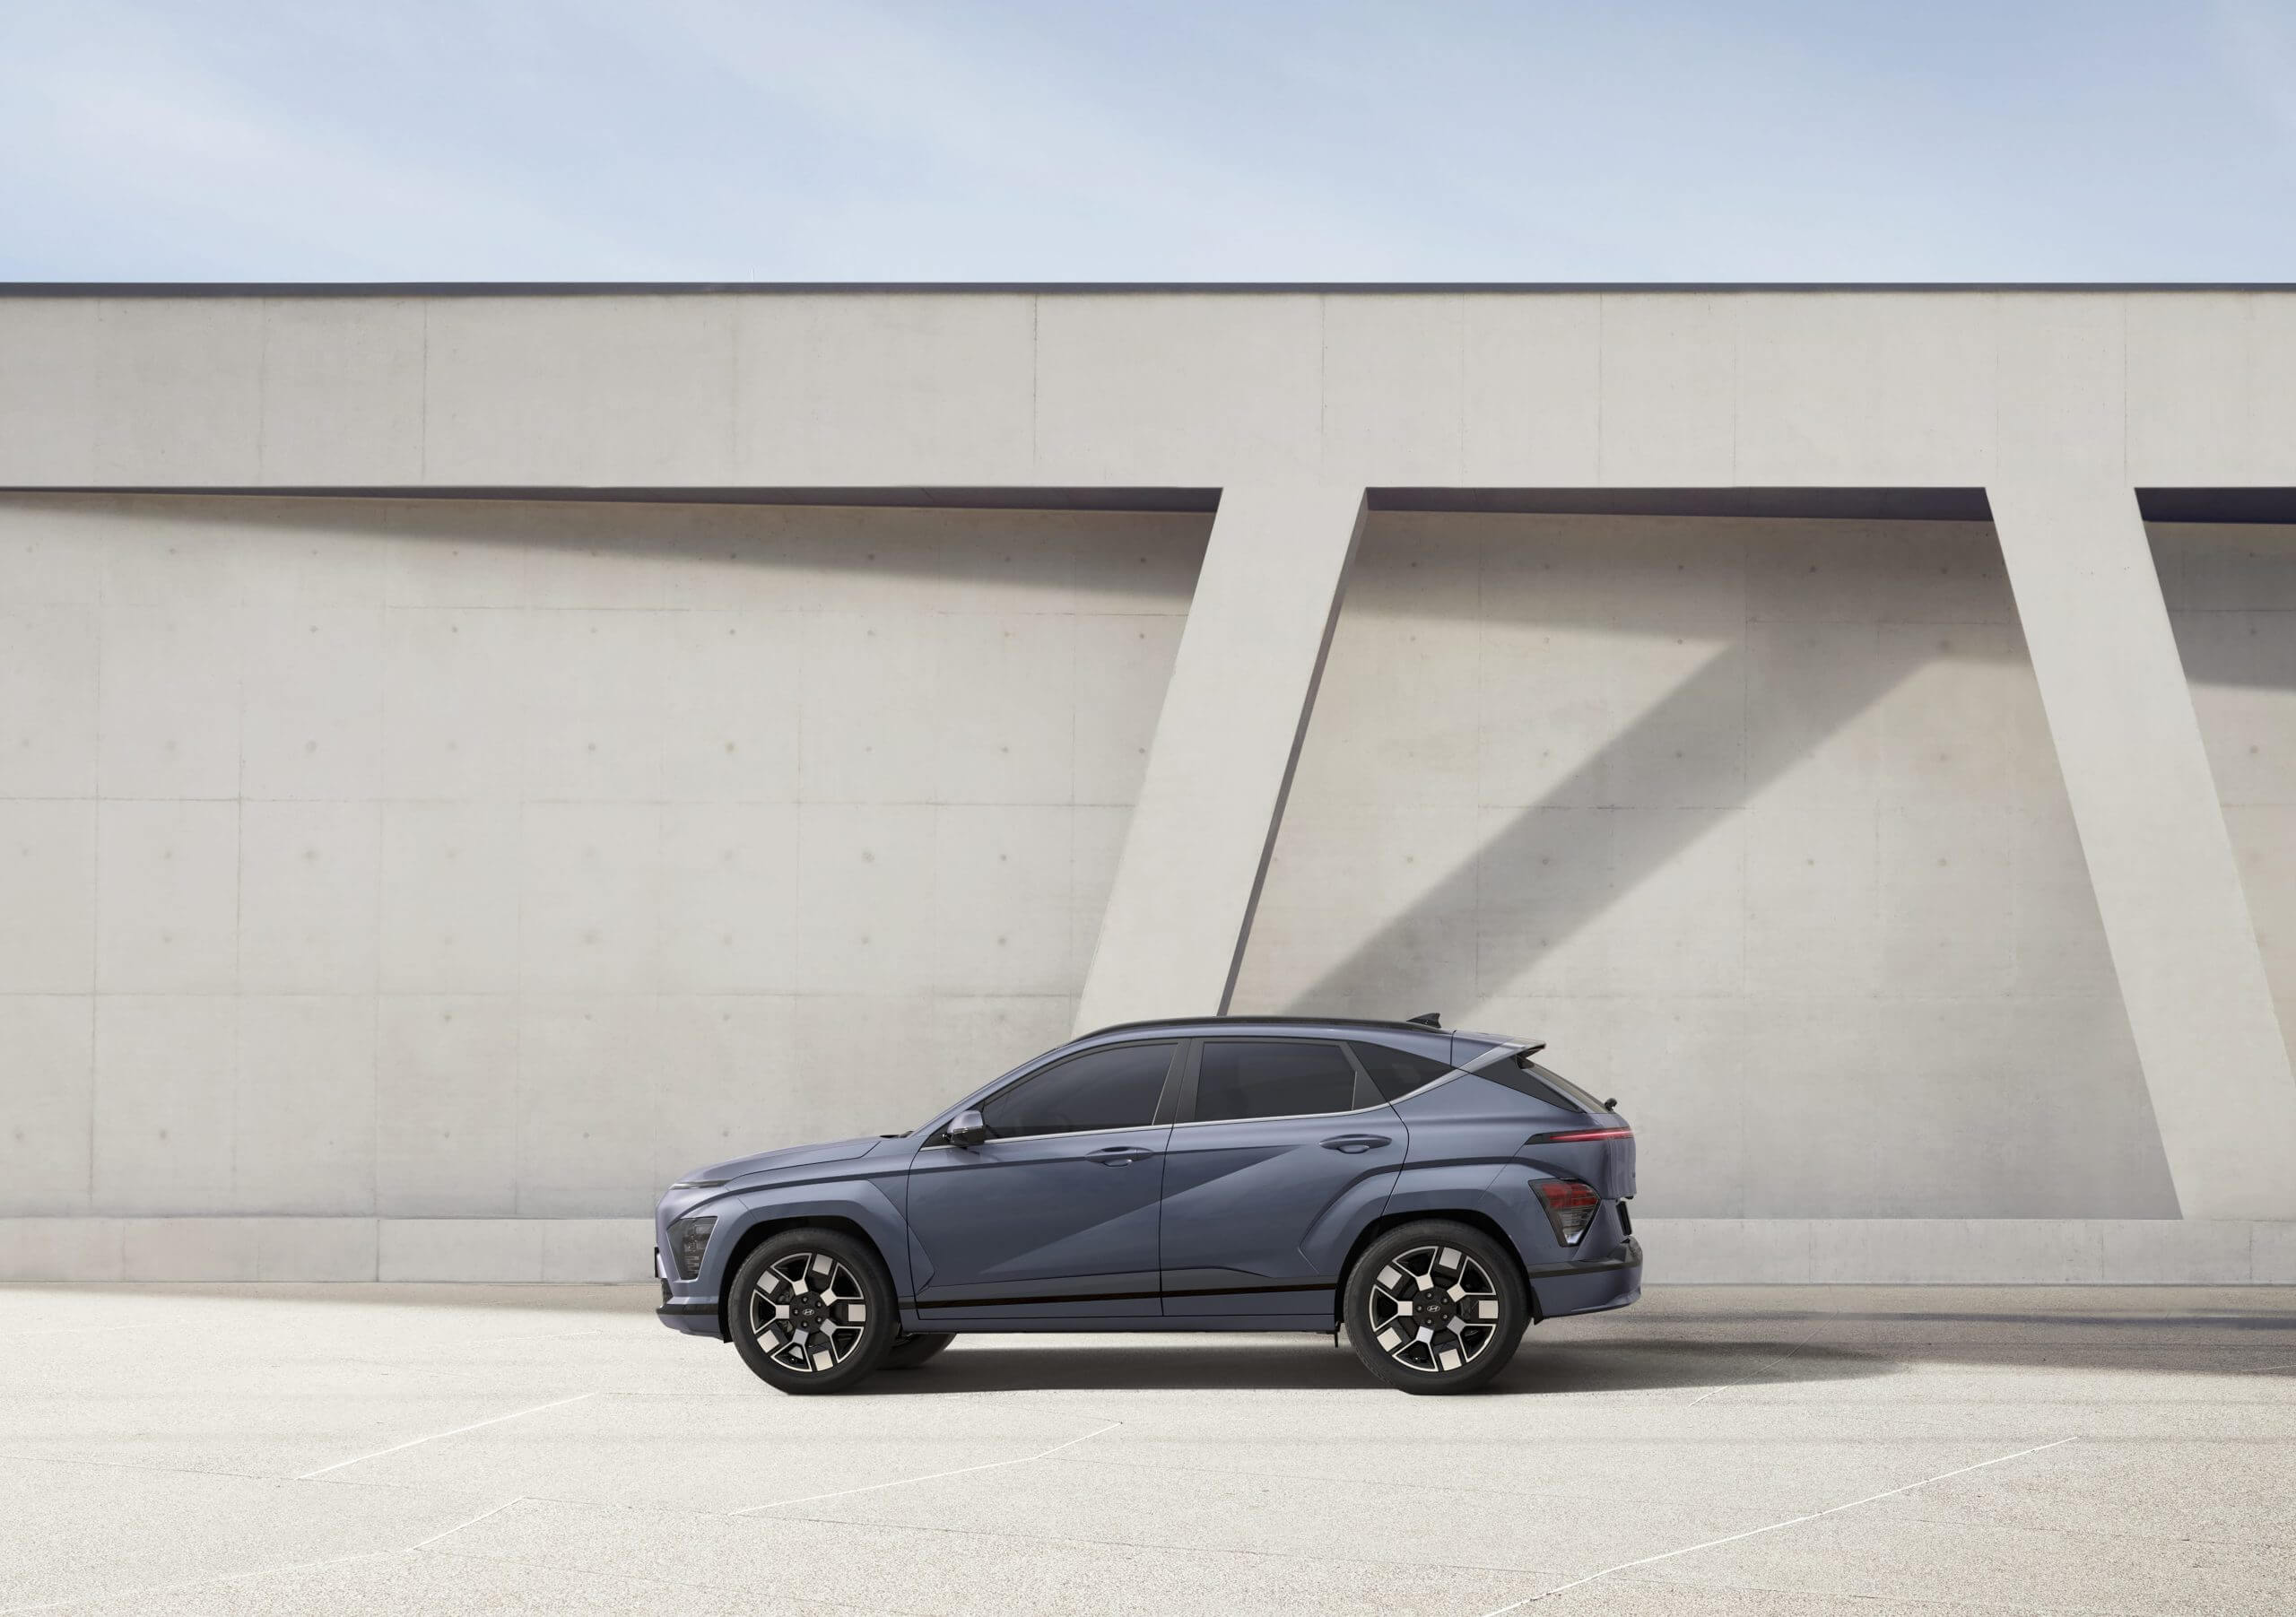 Hyundai dévoile le Kona EV de nouvelle génération, mais laisse beaucoup à l’imagination